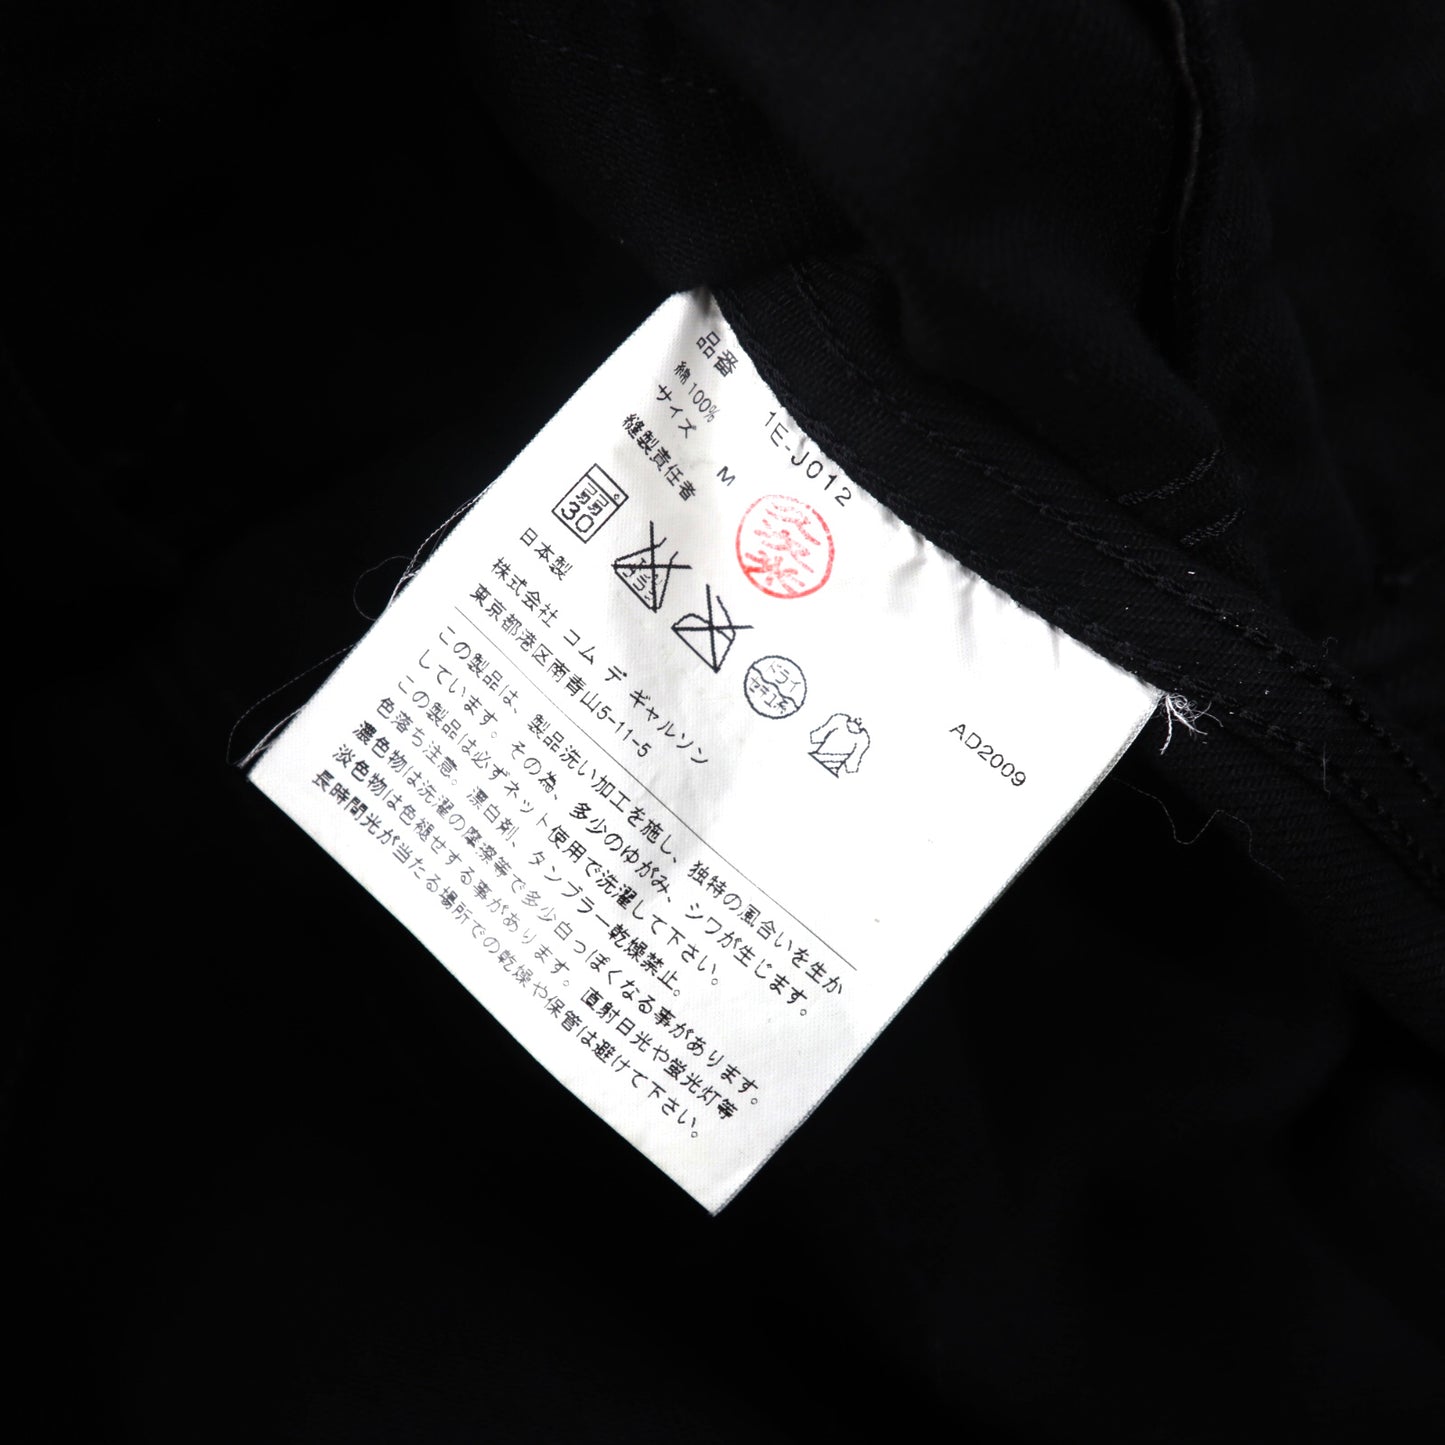 BLACK COMME des GARCONS フーデッドジャケット M ブラック コットン 1E-J012